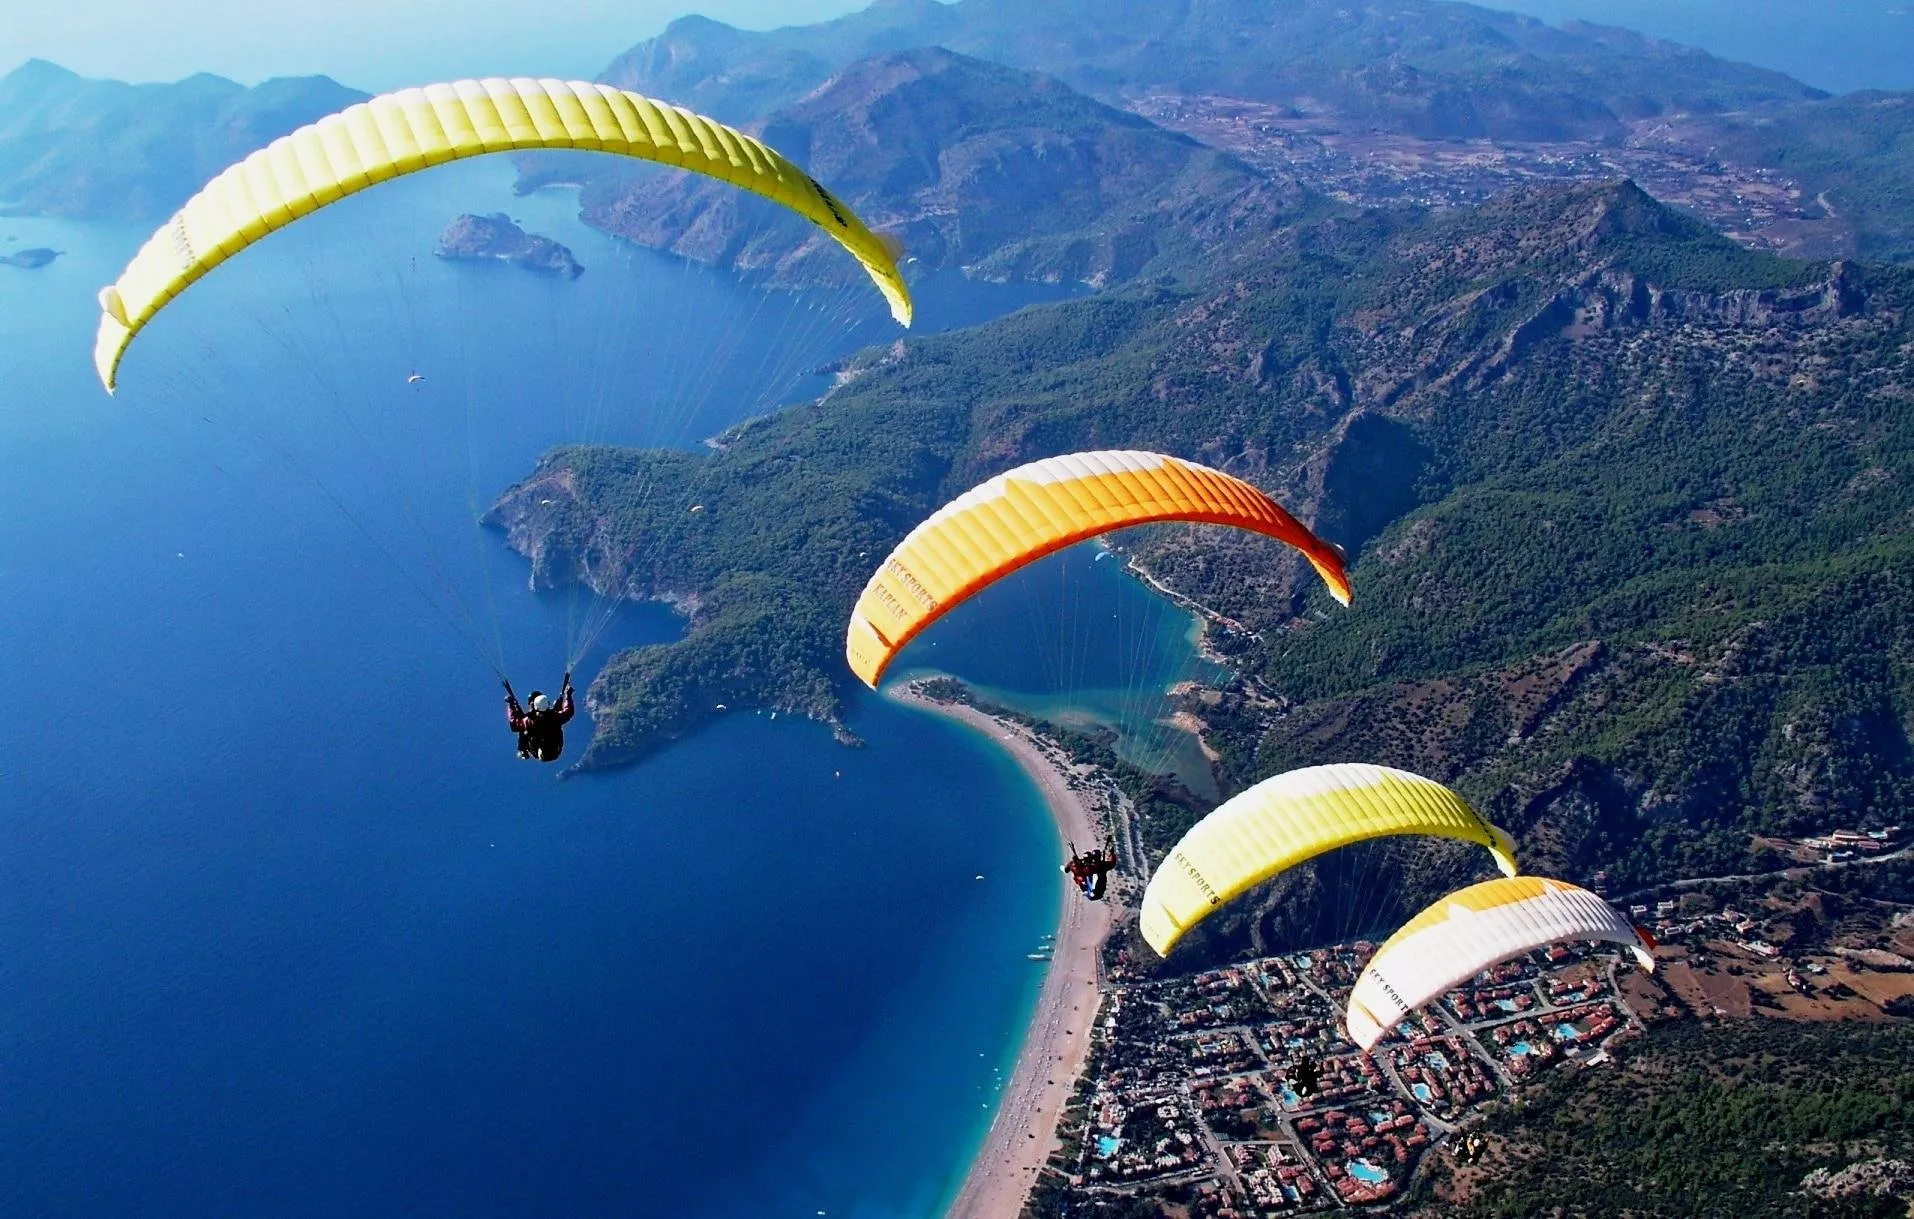 6 اماكن سياحية في تركيا يمكنكِ زيارتها في اجازة عيد الفطر